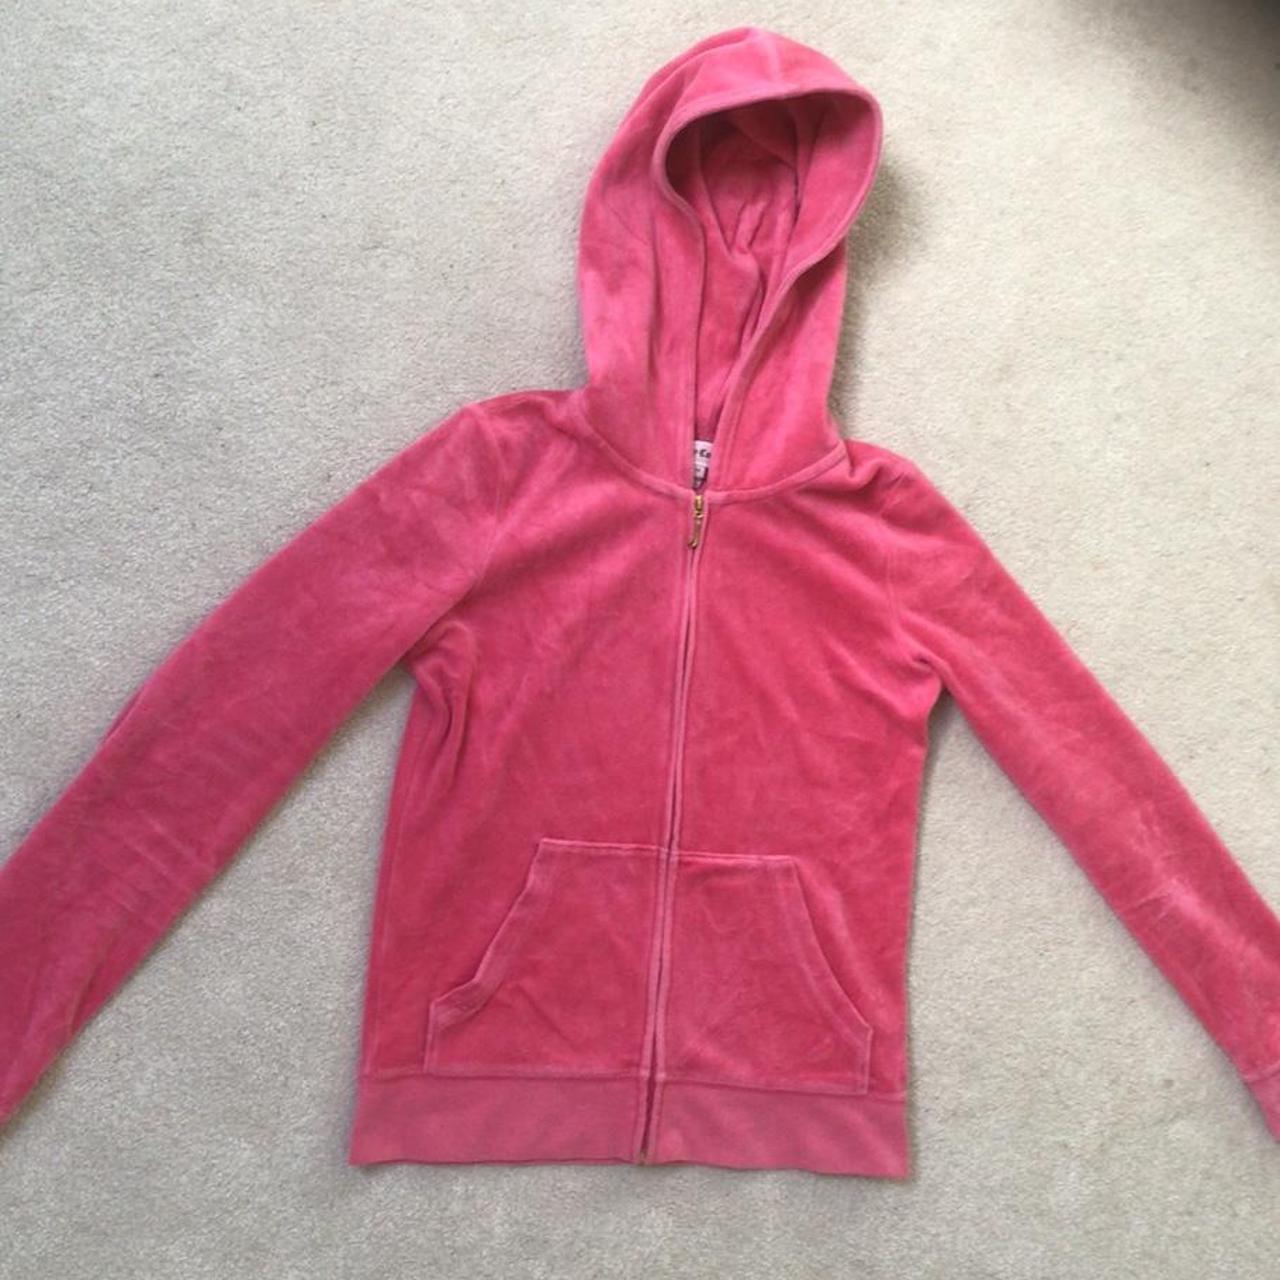 Pink juicy couture zip up, old style hoodie, design... - Depop